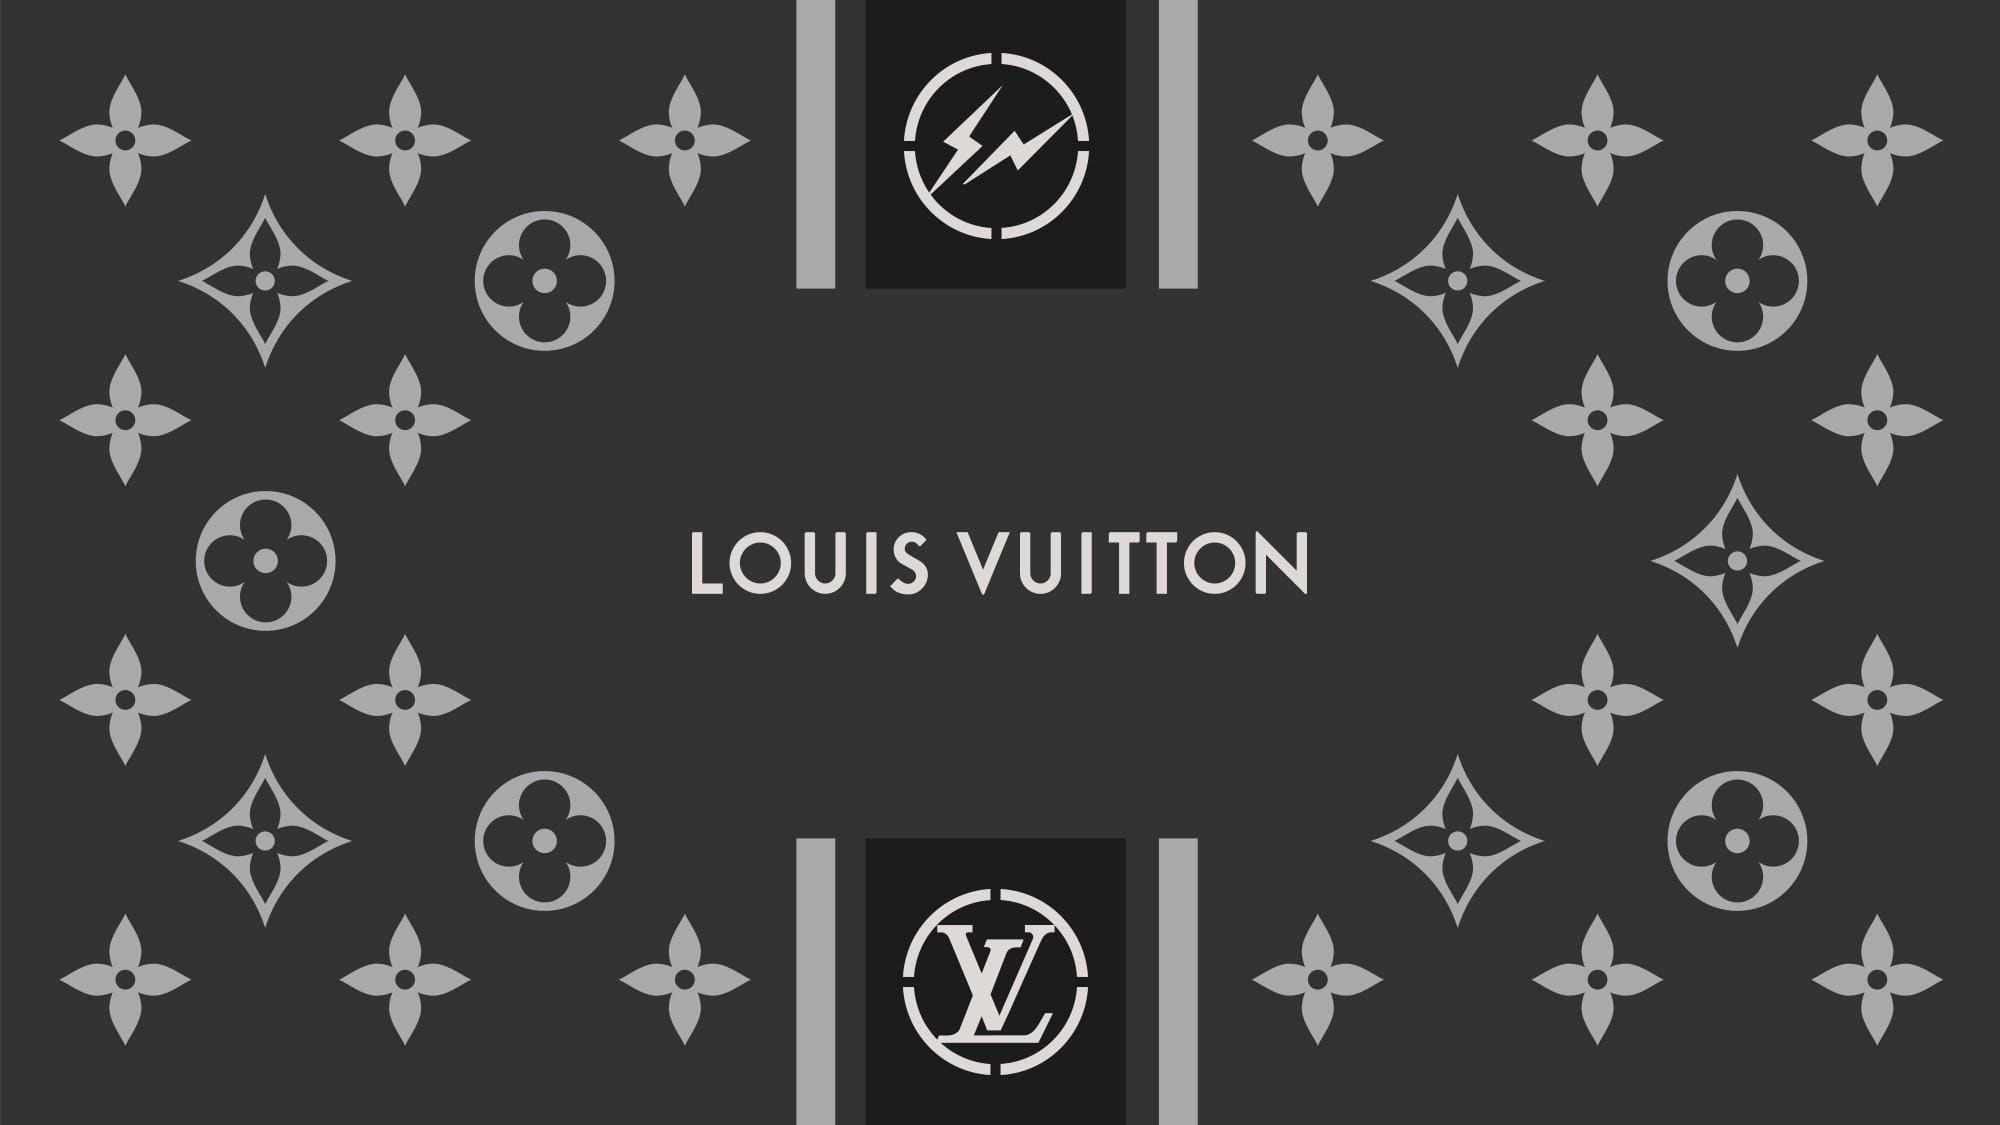 Louis Vuitton Urban Logo - lv logo 1001 Health Care Logos, Louis Vuitton Urban Logo - Tomchabin